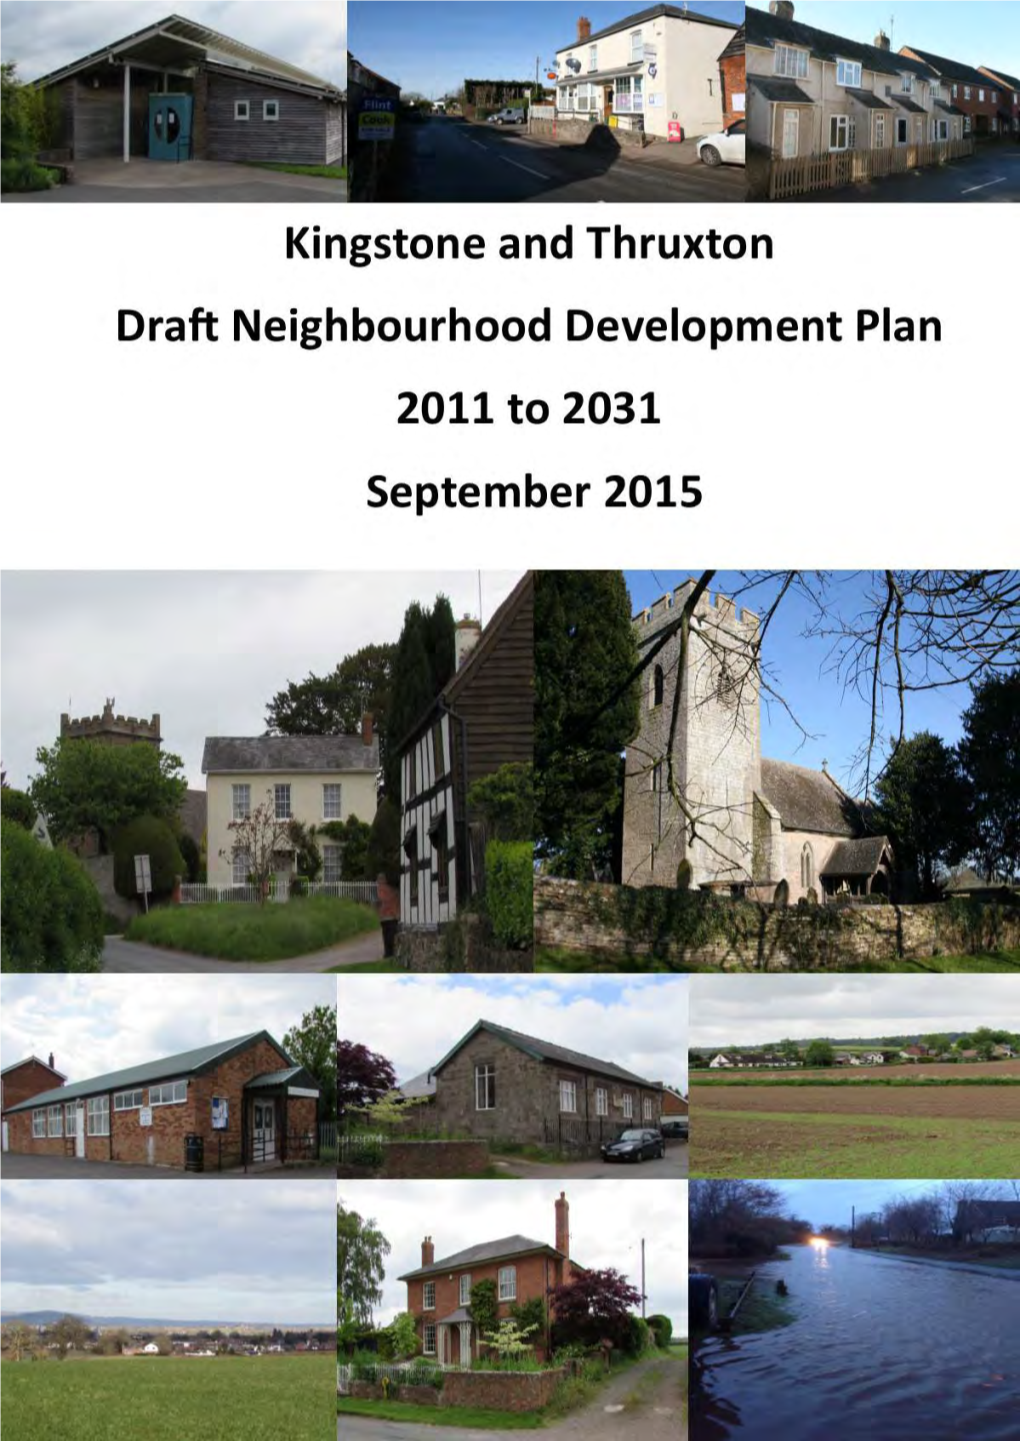 Kingstone and Thruxton Group Draft Neighbourhood Development Plan September 2015